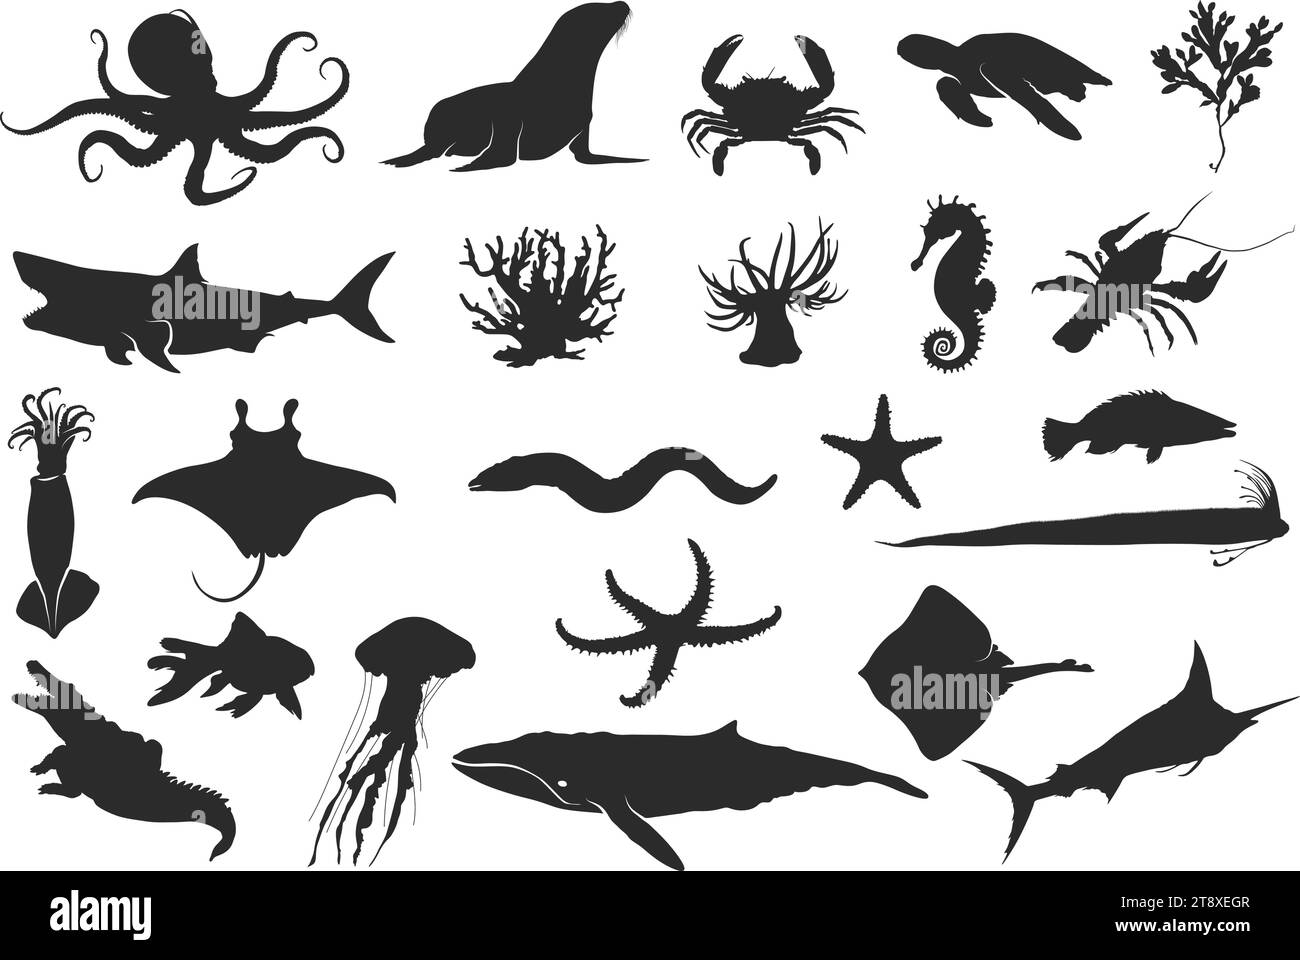 Silhouette d'animal de mer, silhouette d'animal d'océan, silhouettes noires de poisson, hippocampe, coquillages, poulpe, calmar, méduses, dauphins, étoiles de mer etc Illustration de Vecteur